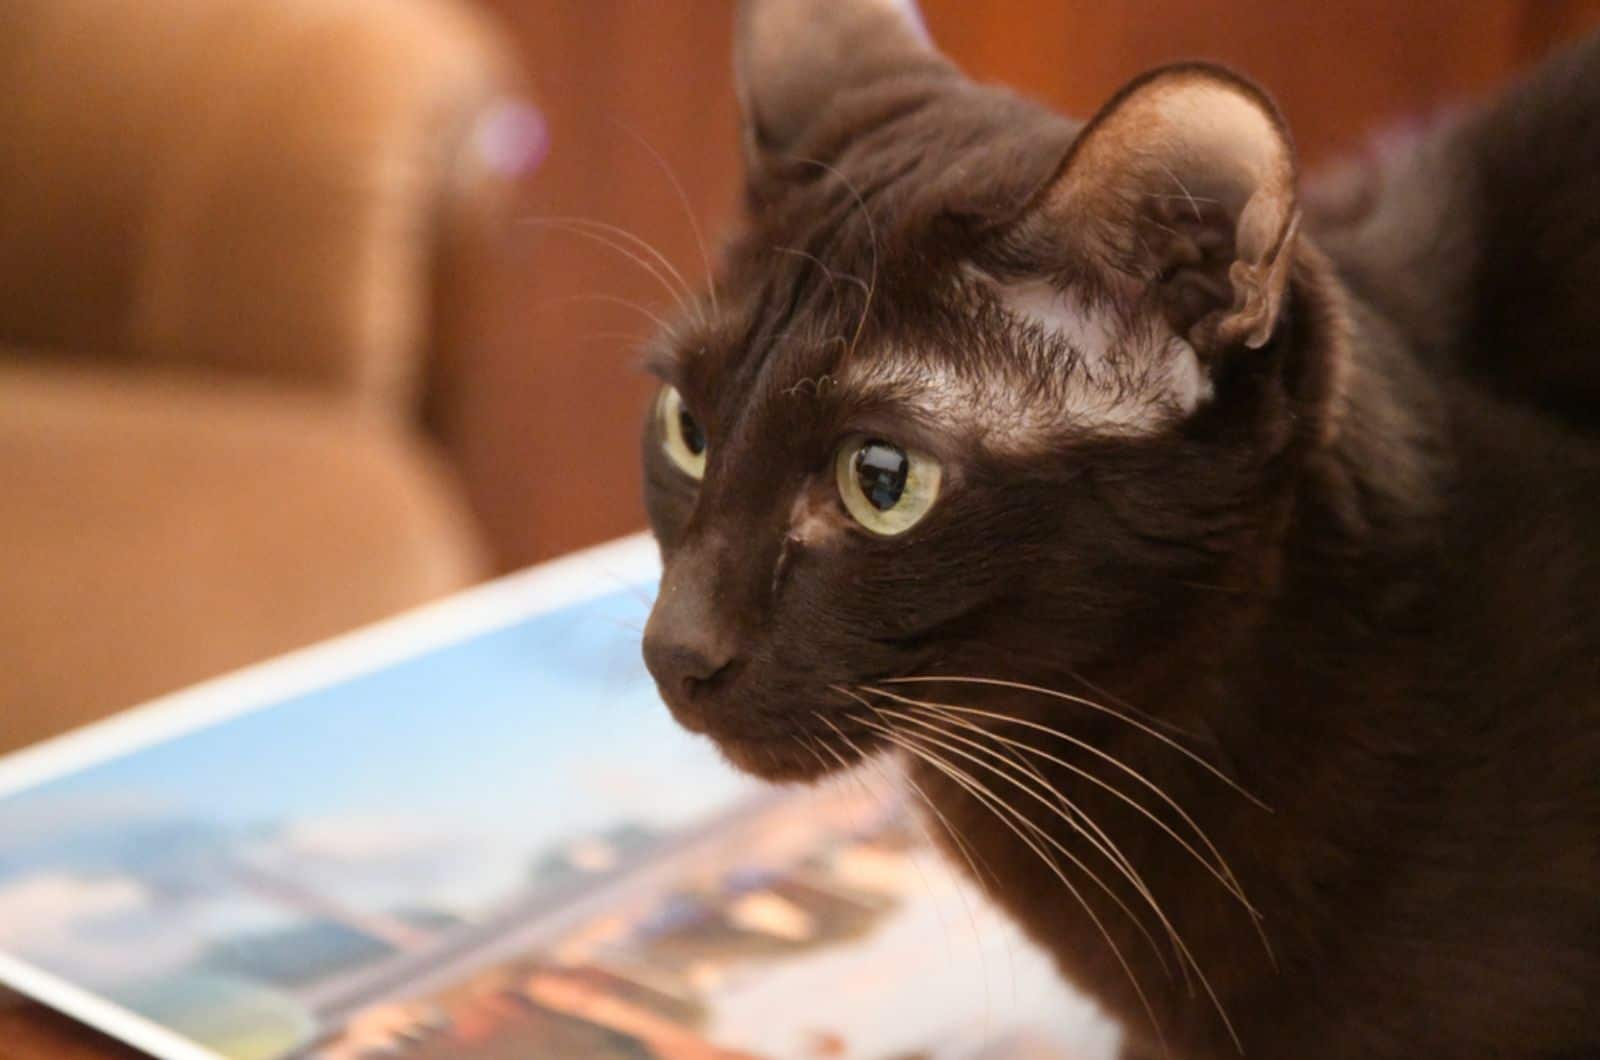 Havana bruine kat kijkt opzij